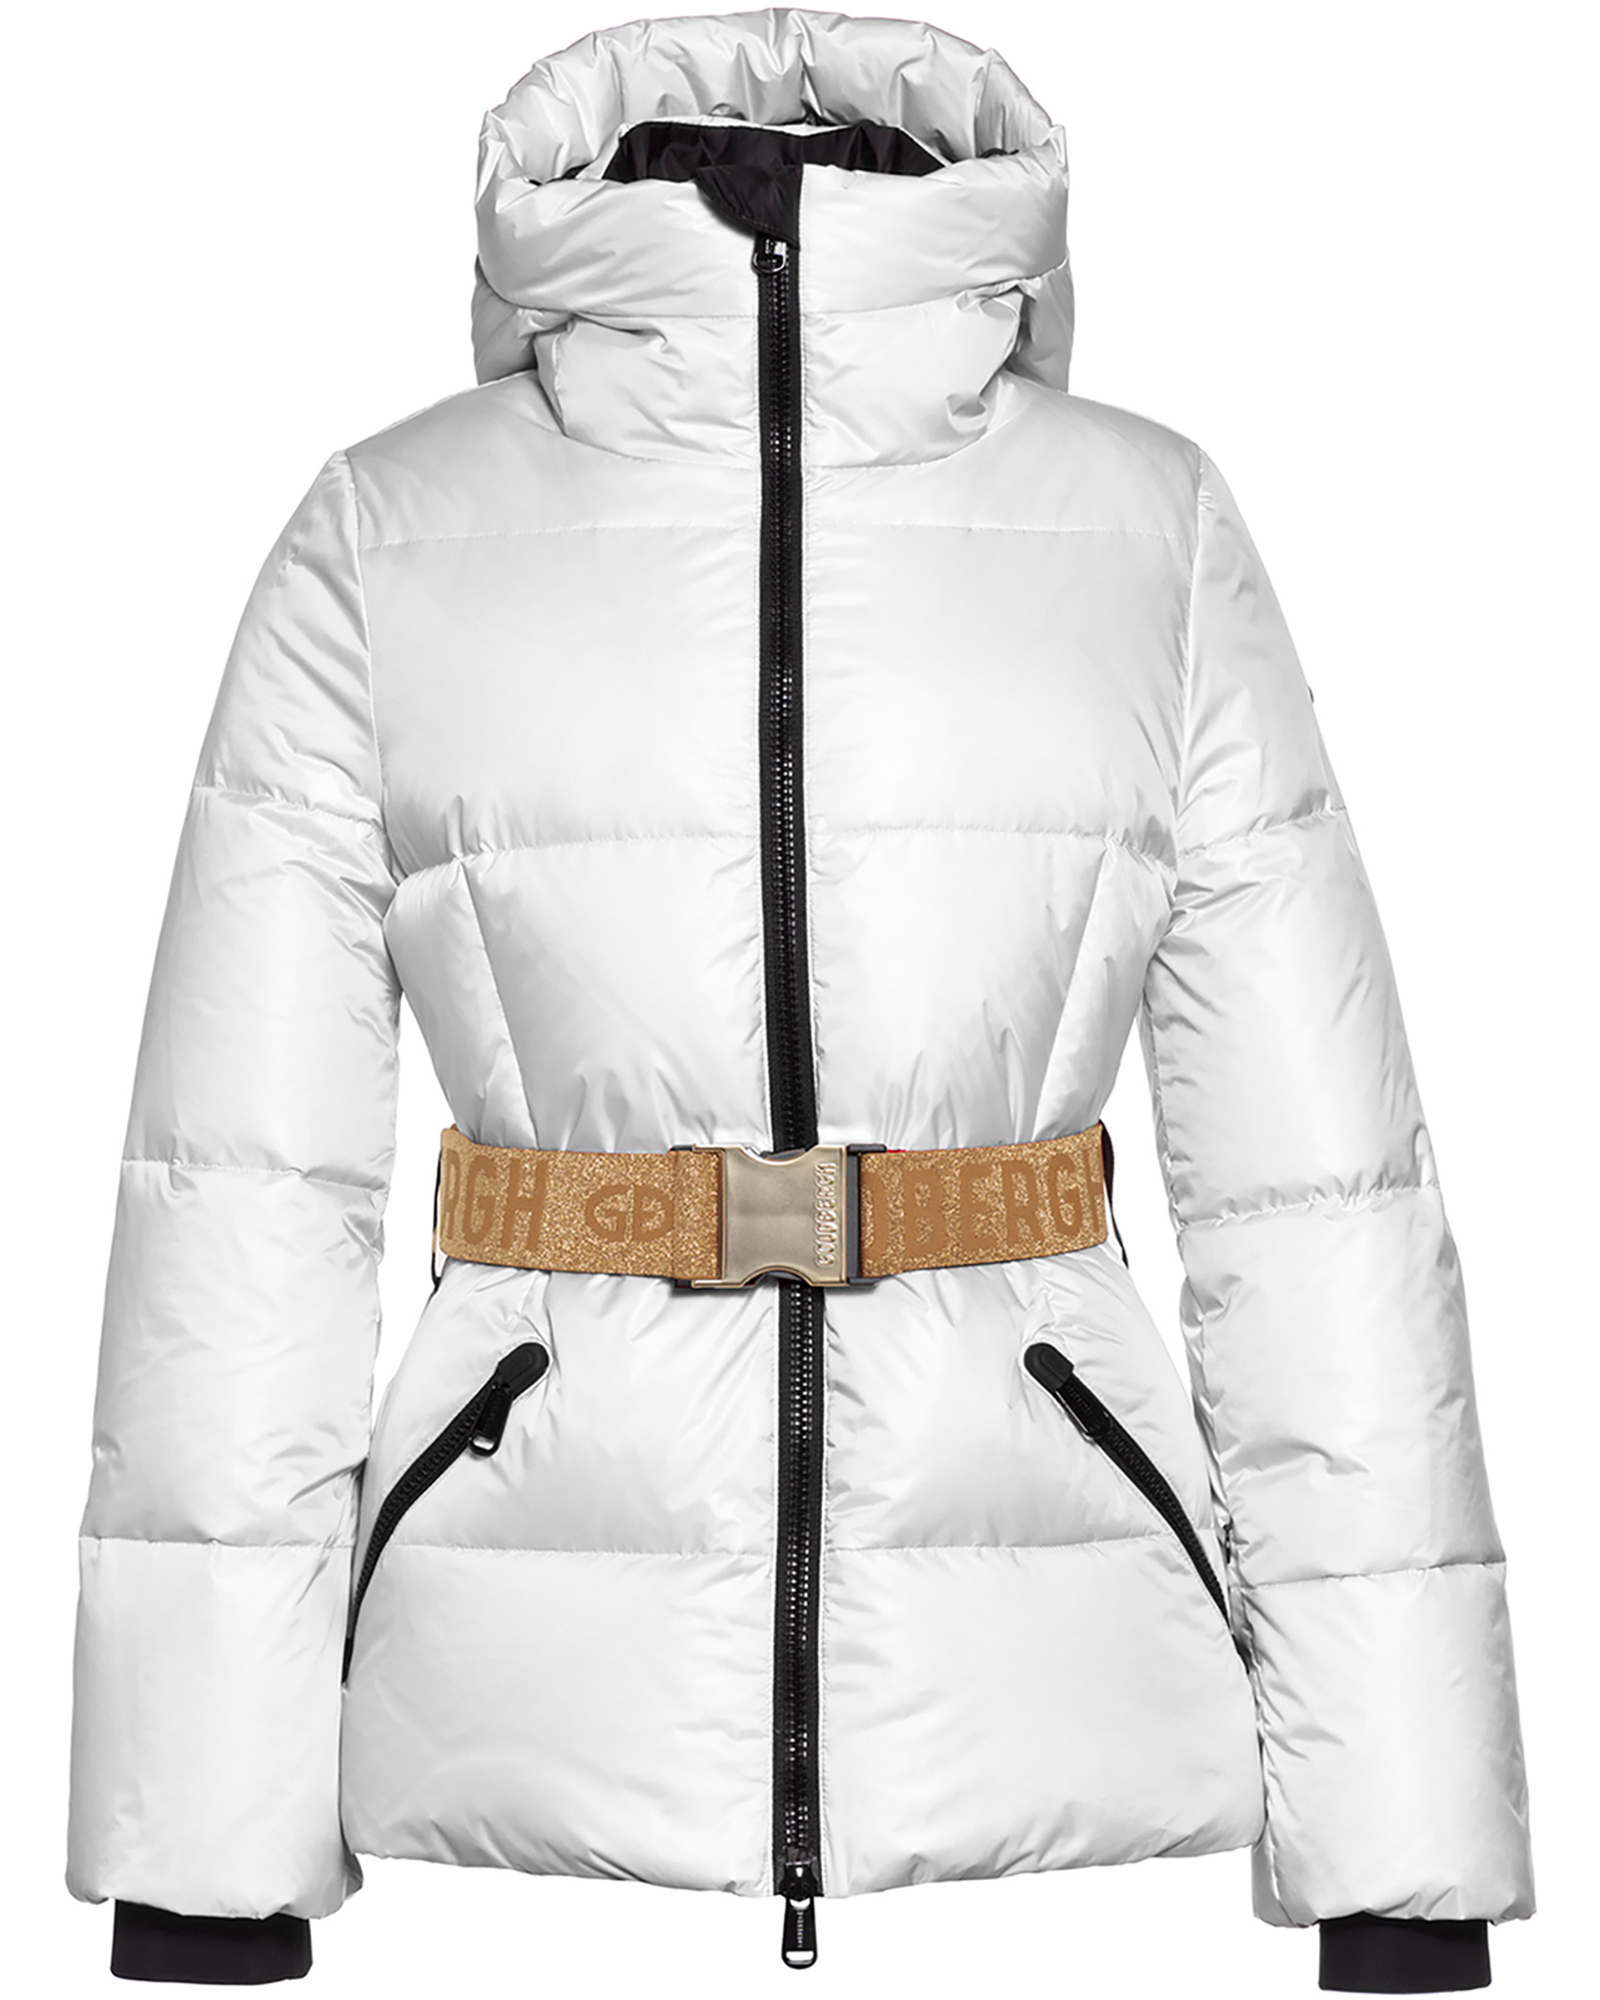 Goldbergh Snowmass Women’s Jacket - White/Gold 8